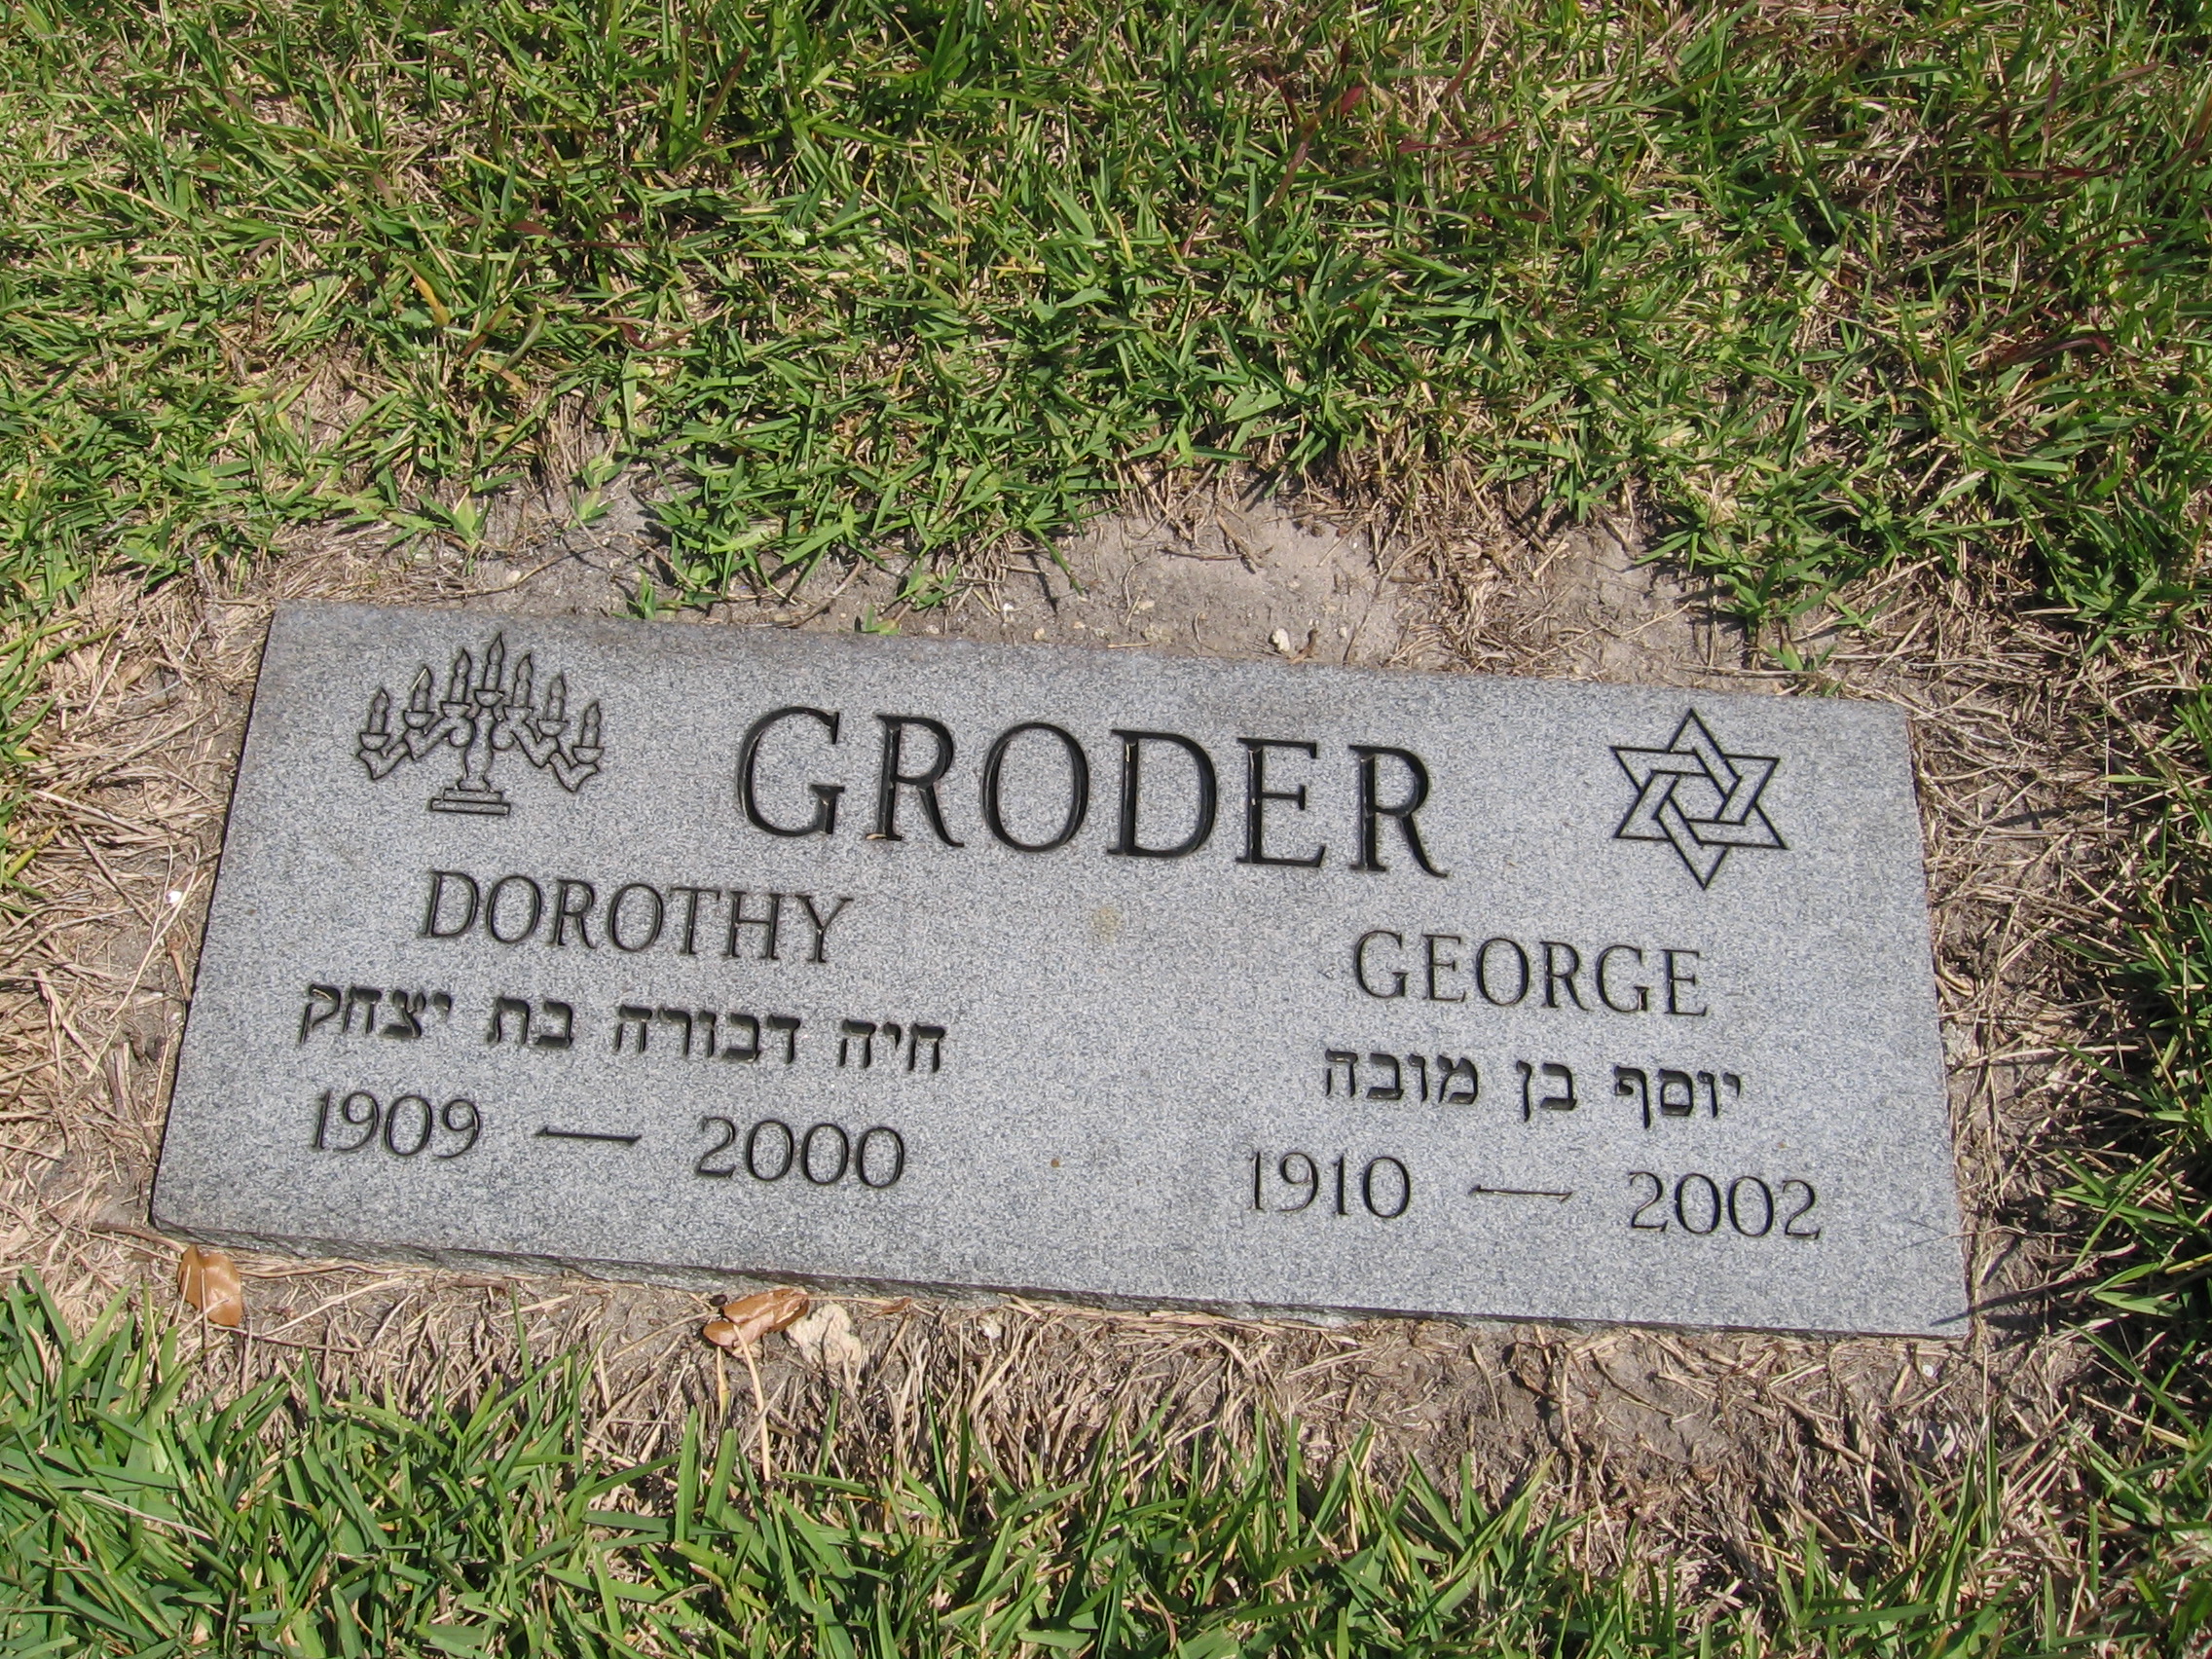 George Groder